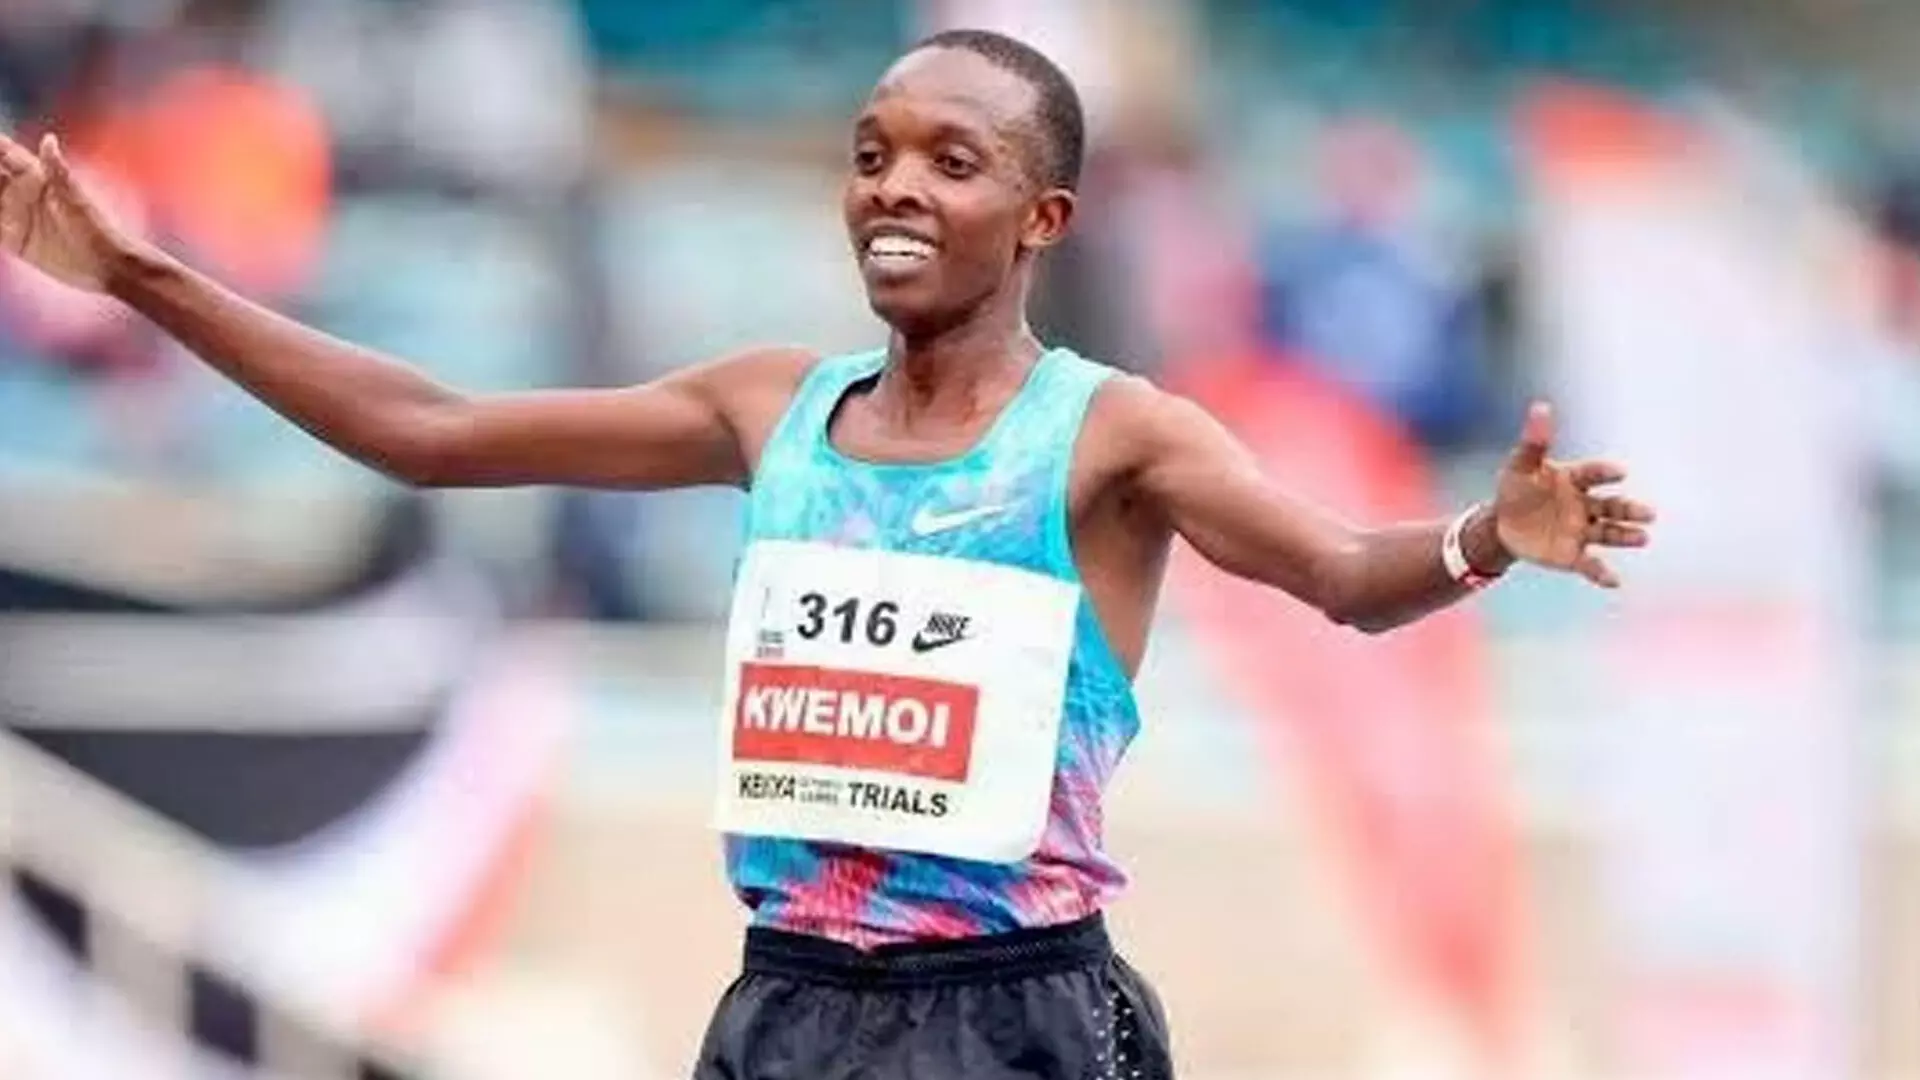 केन्याई धावक रॉजर्स क्वेमोई पर रक्त डोपिंग के लिए 6 साल का प्रतिबंध